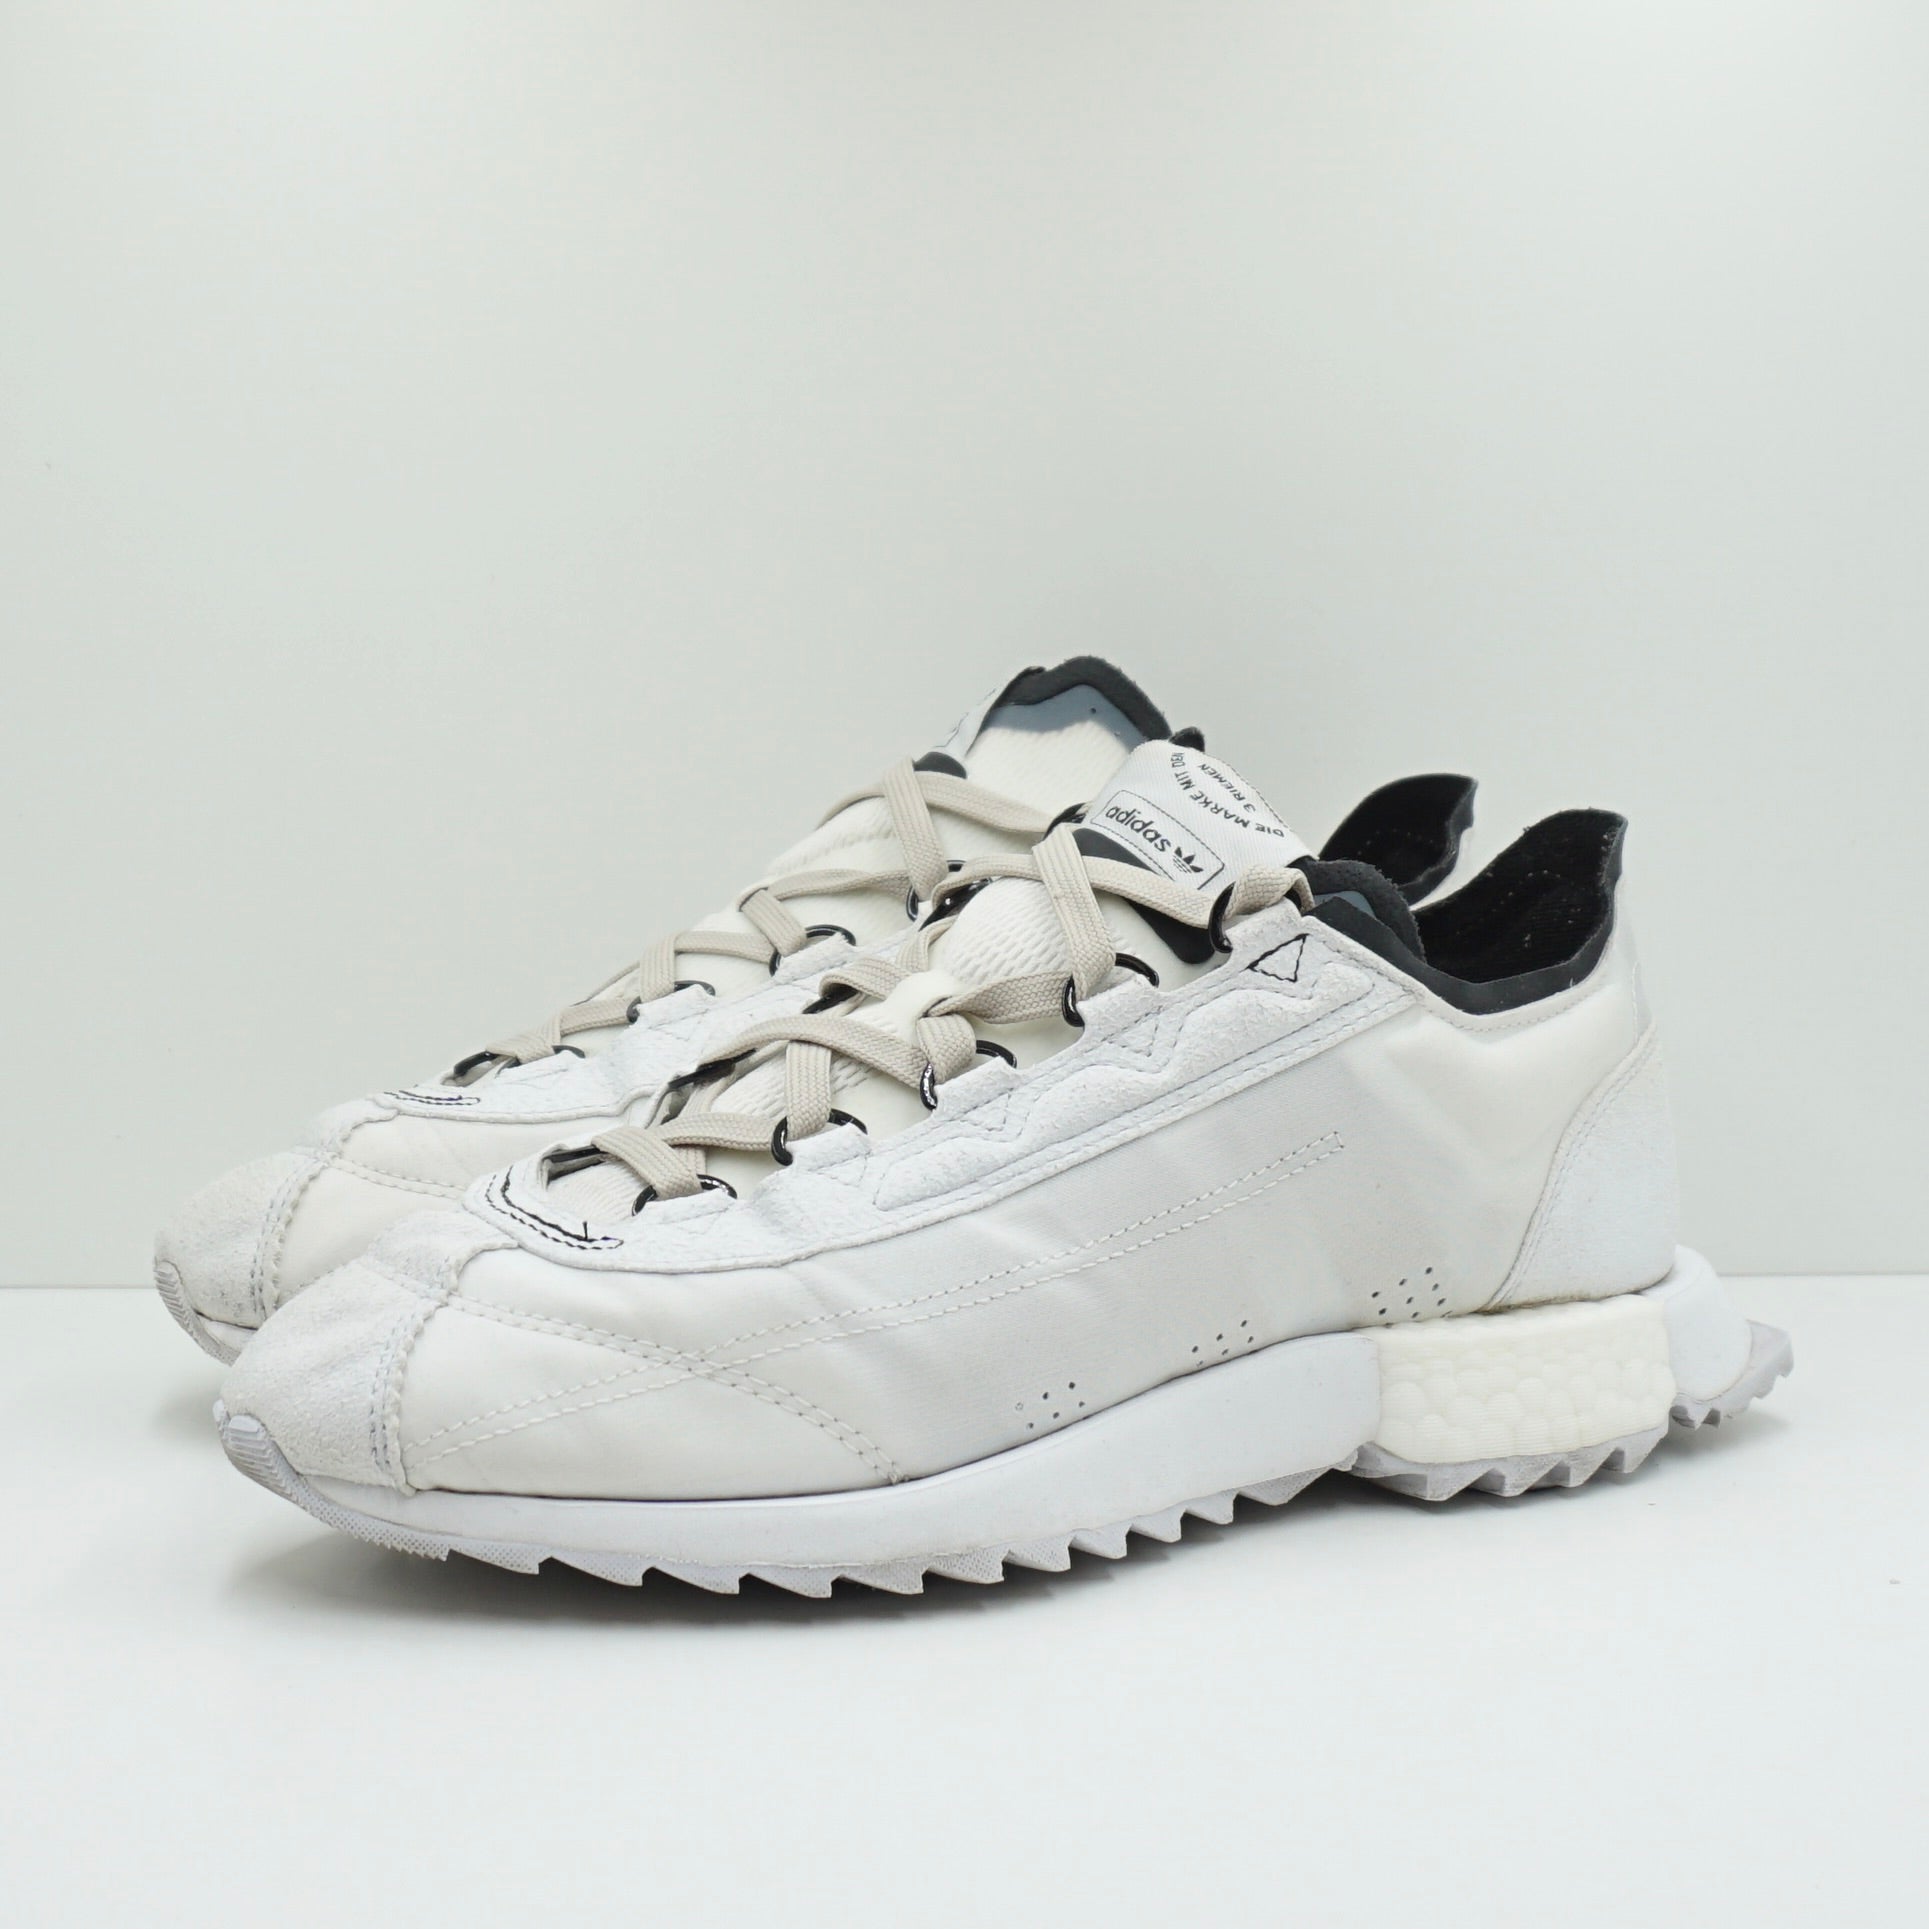 Adidas SL 7600 Cloud White